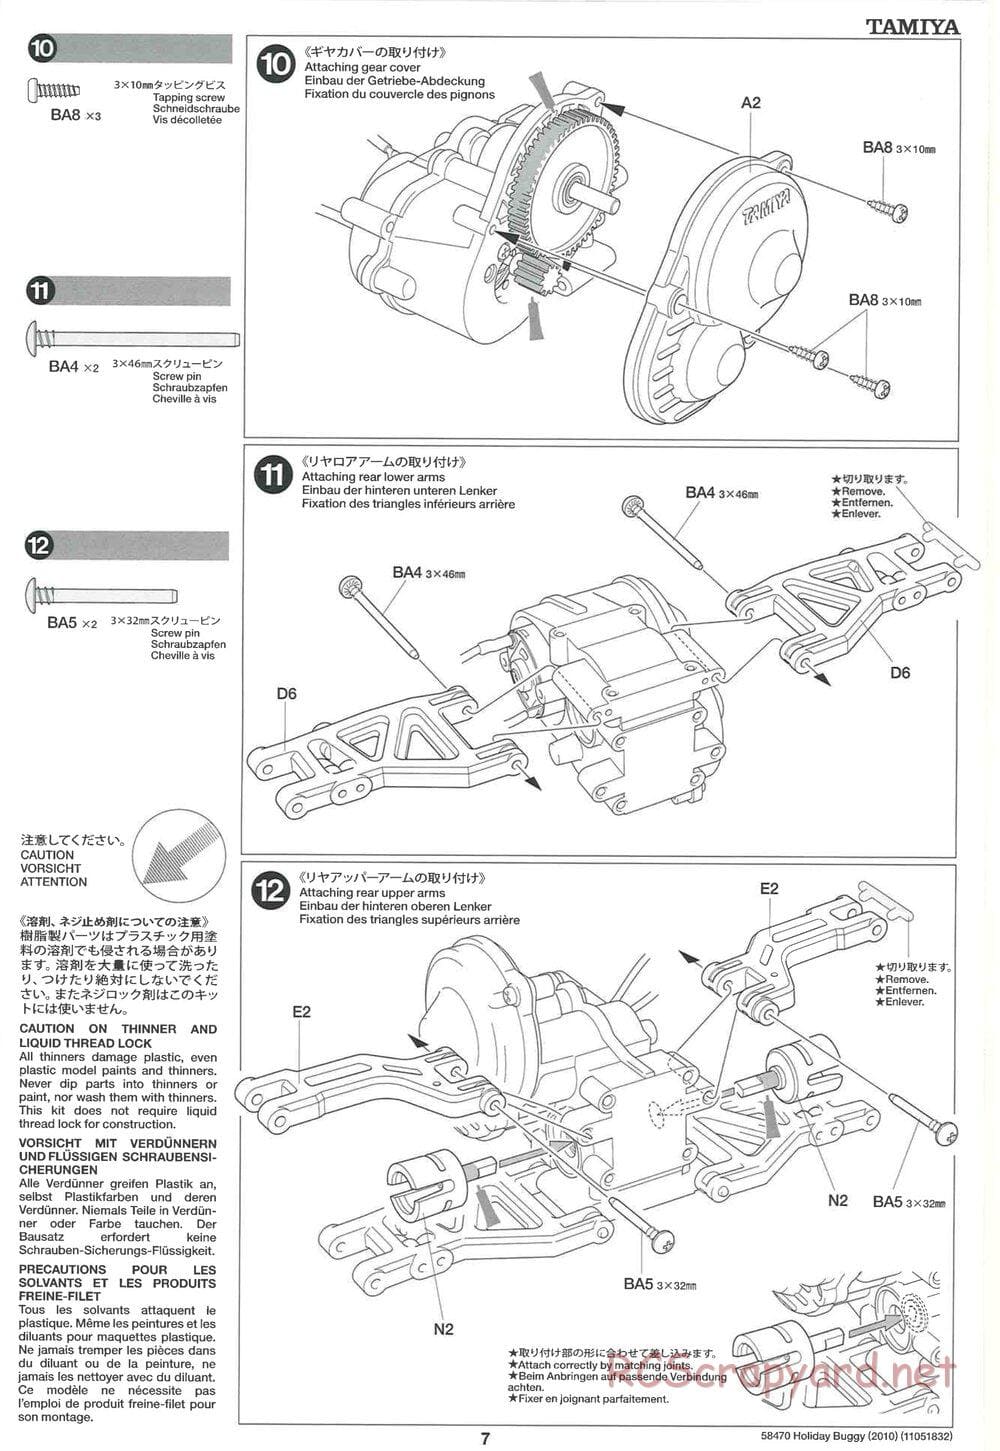 Tamiya - Holiday Buggy 2010 Chassis - Manual - Page 7